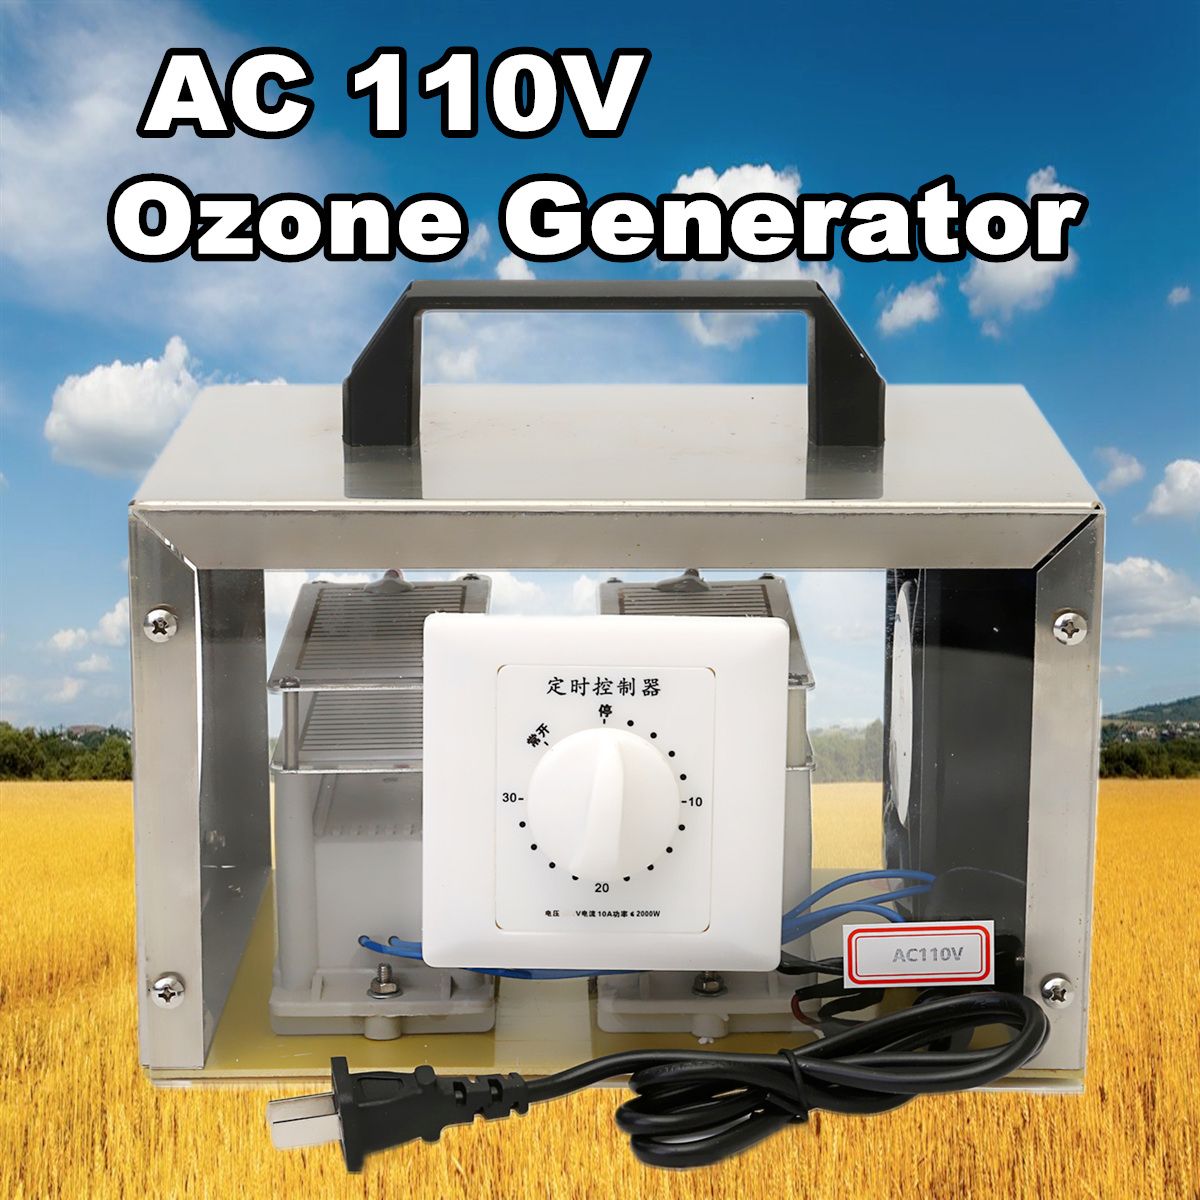 AC-110V-Ozone-Generator-Electronic-20g-Ozone-Generator-1192350